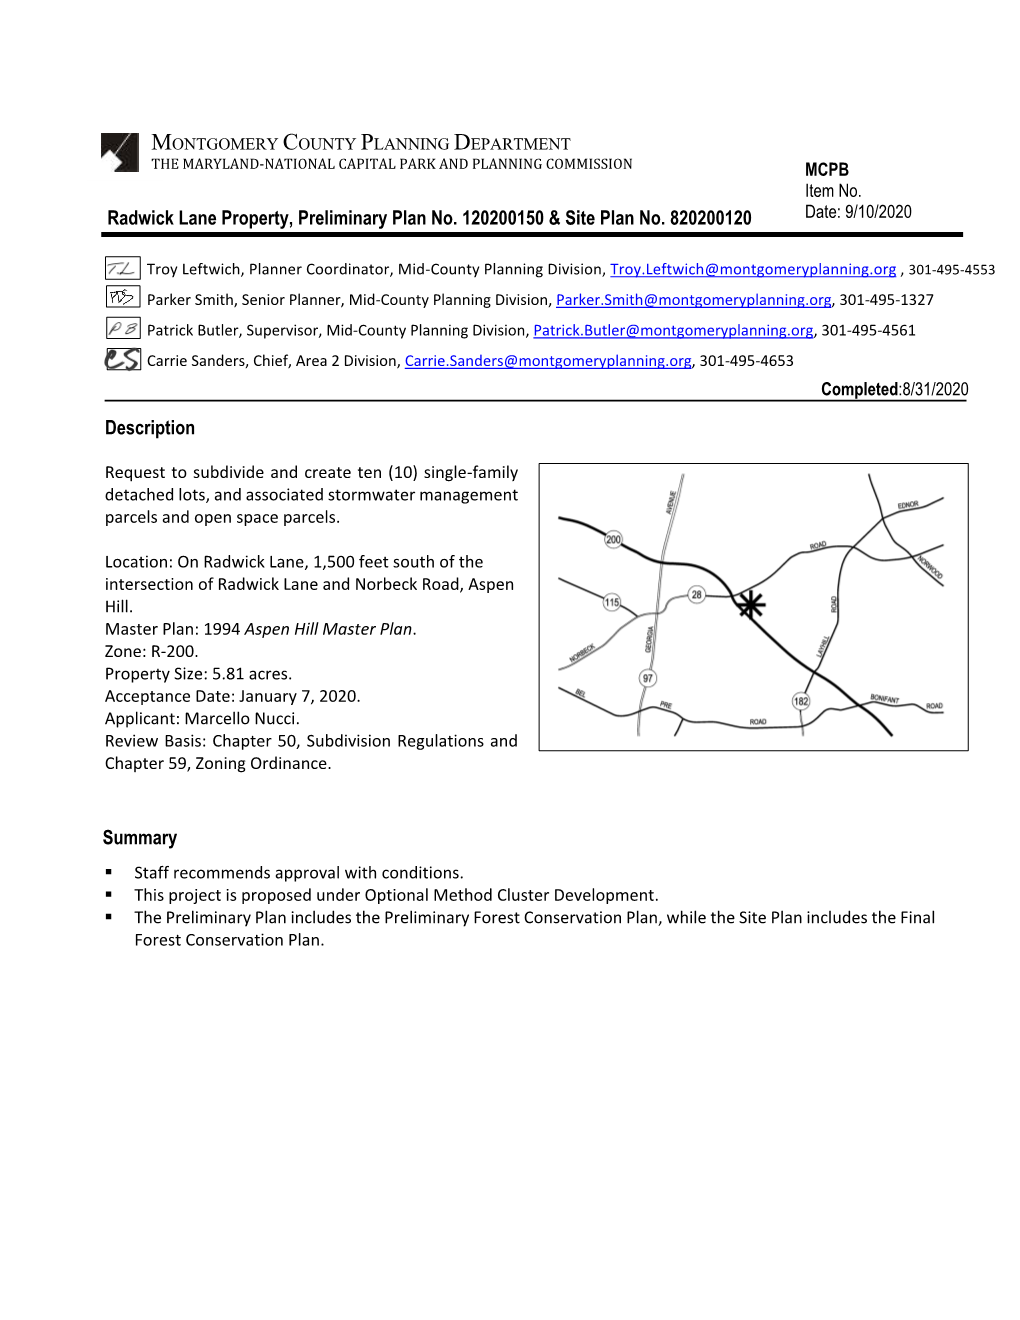 Radwick Lane, Preliminary Plan 120200150 and Site Plan 820200120